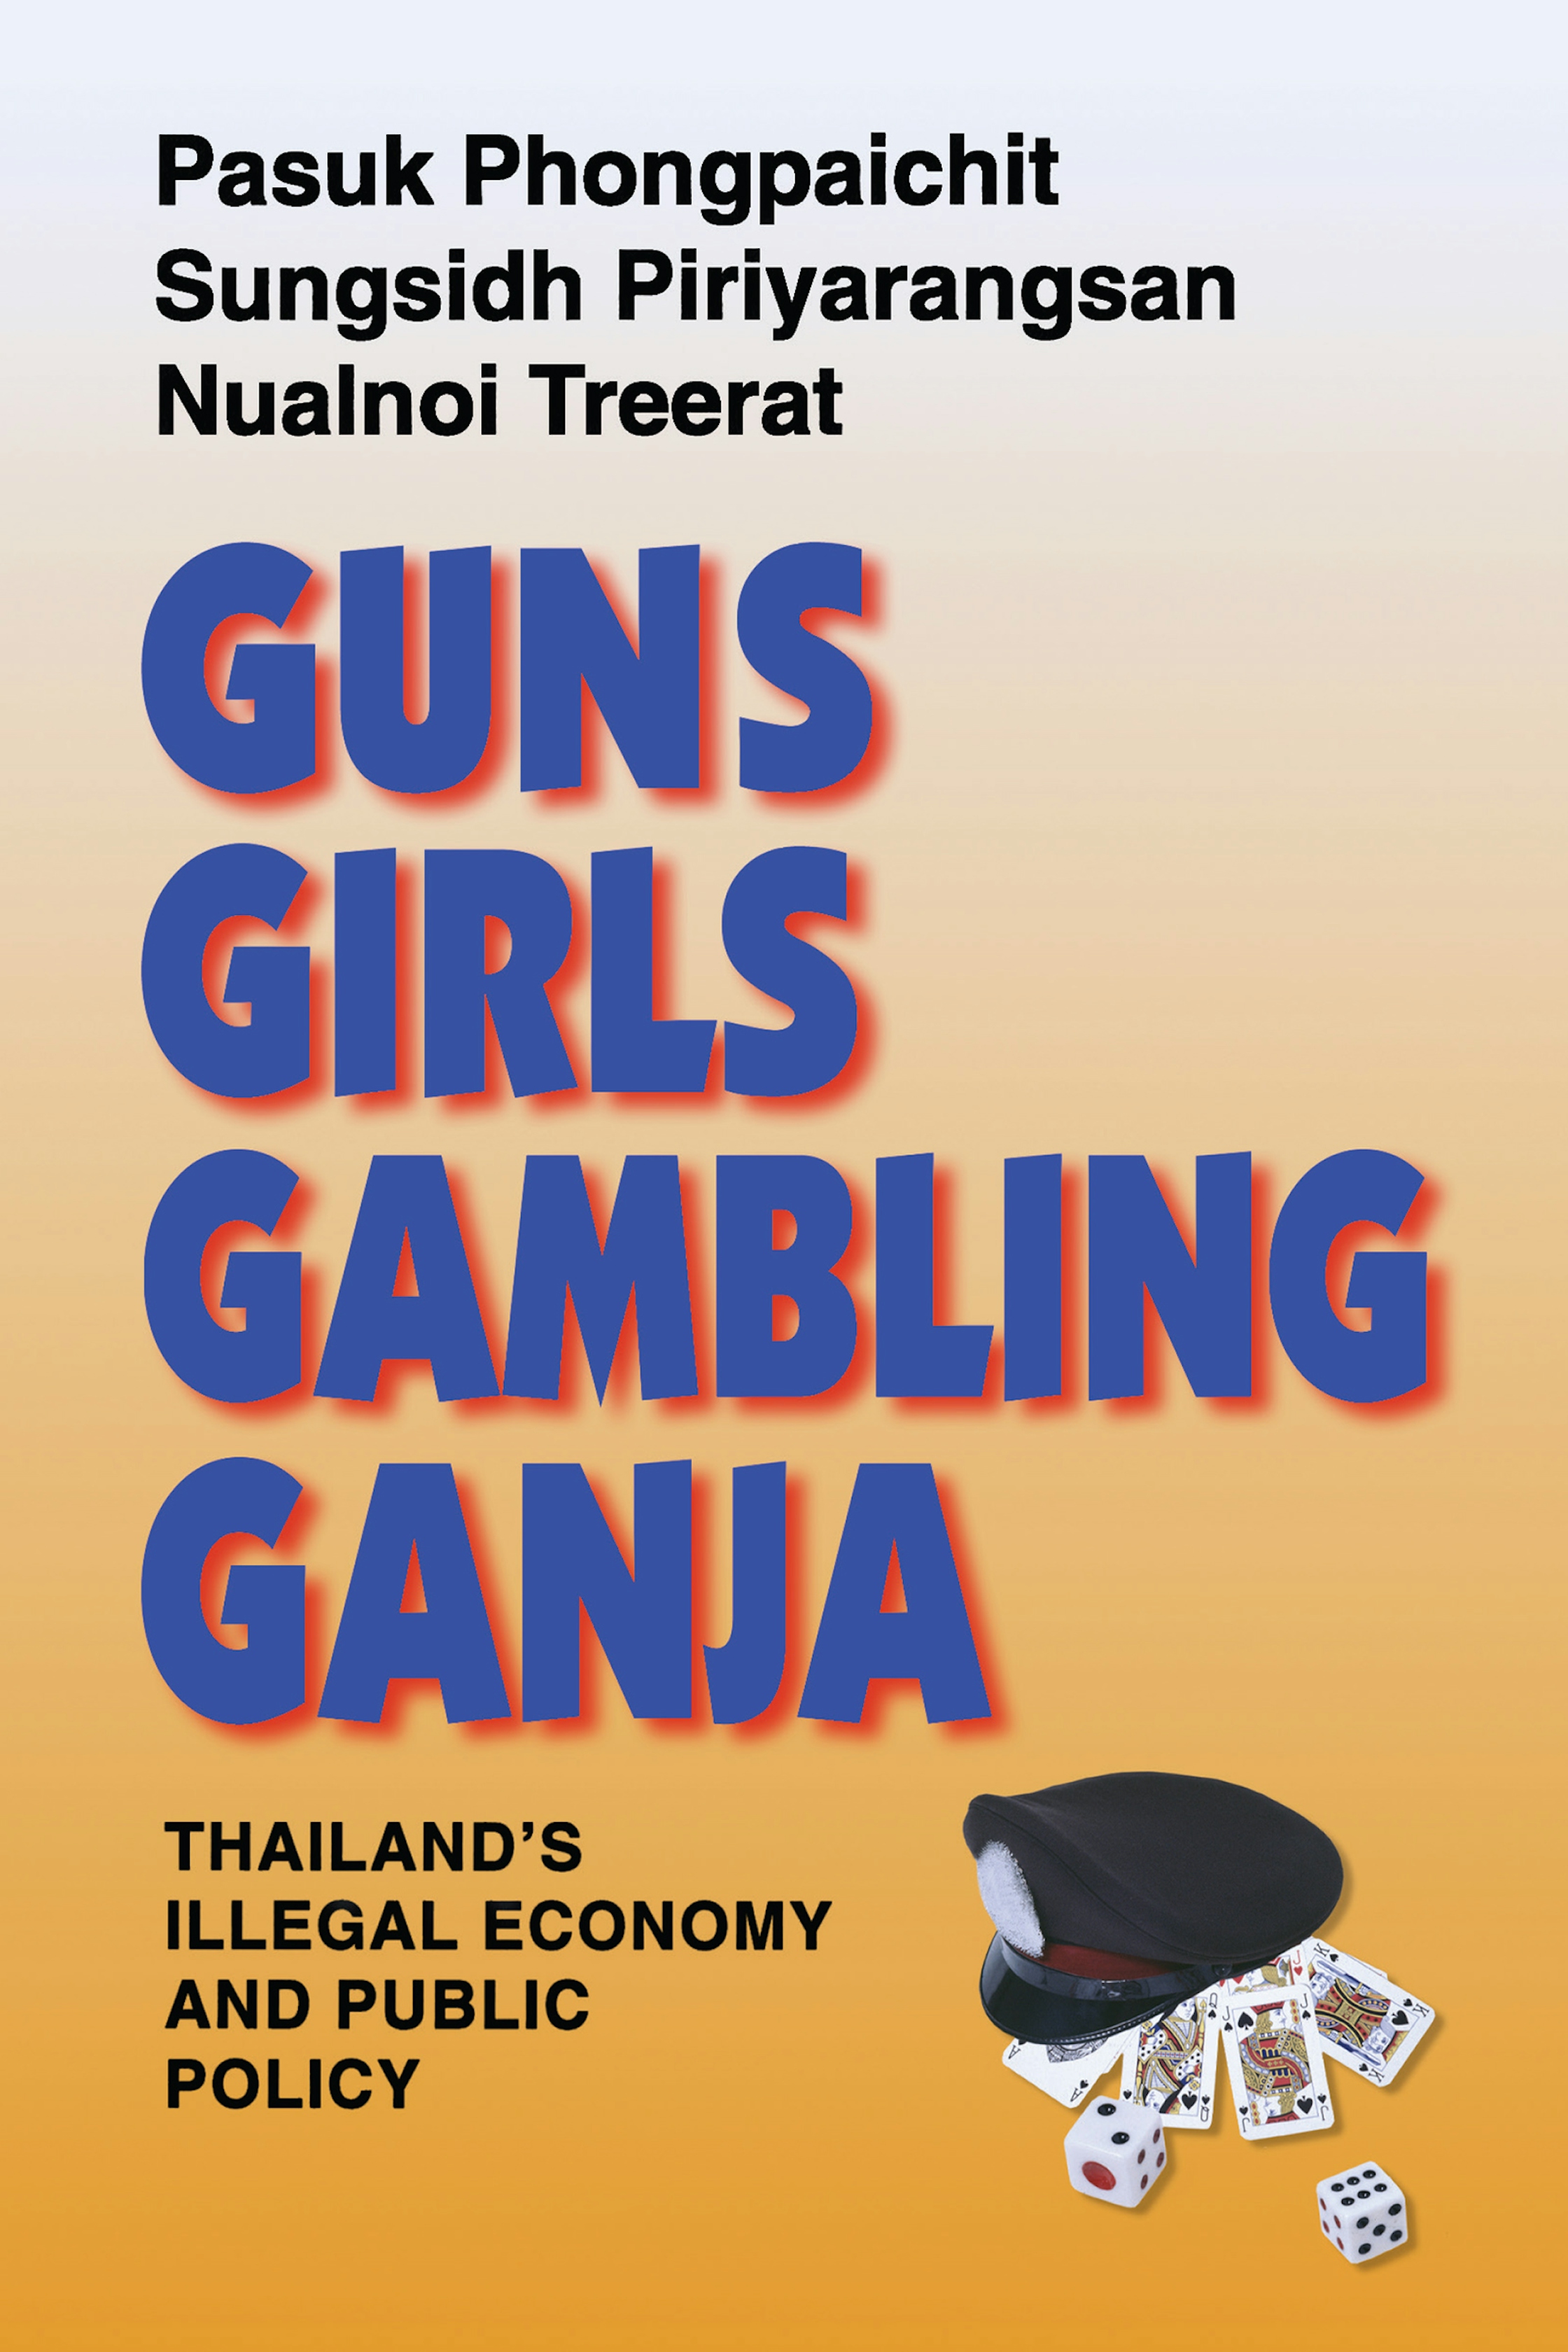 Guns, Girls, Gambling, Ganja